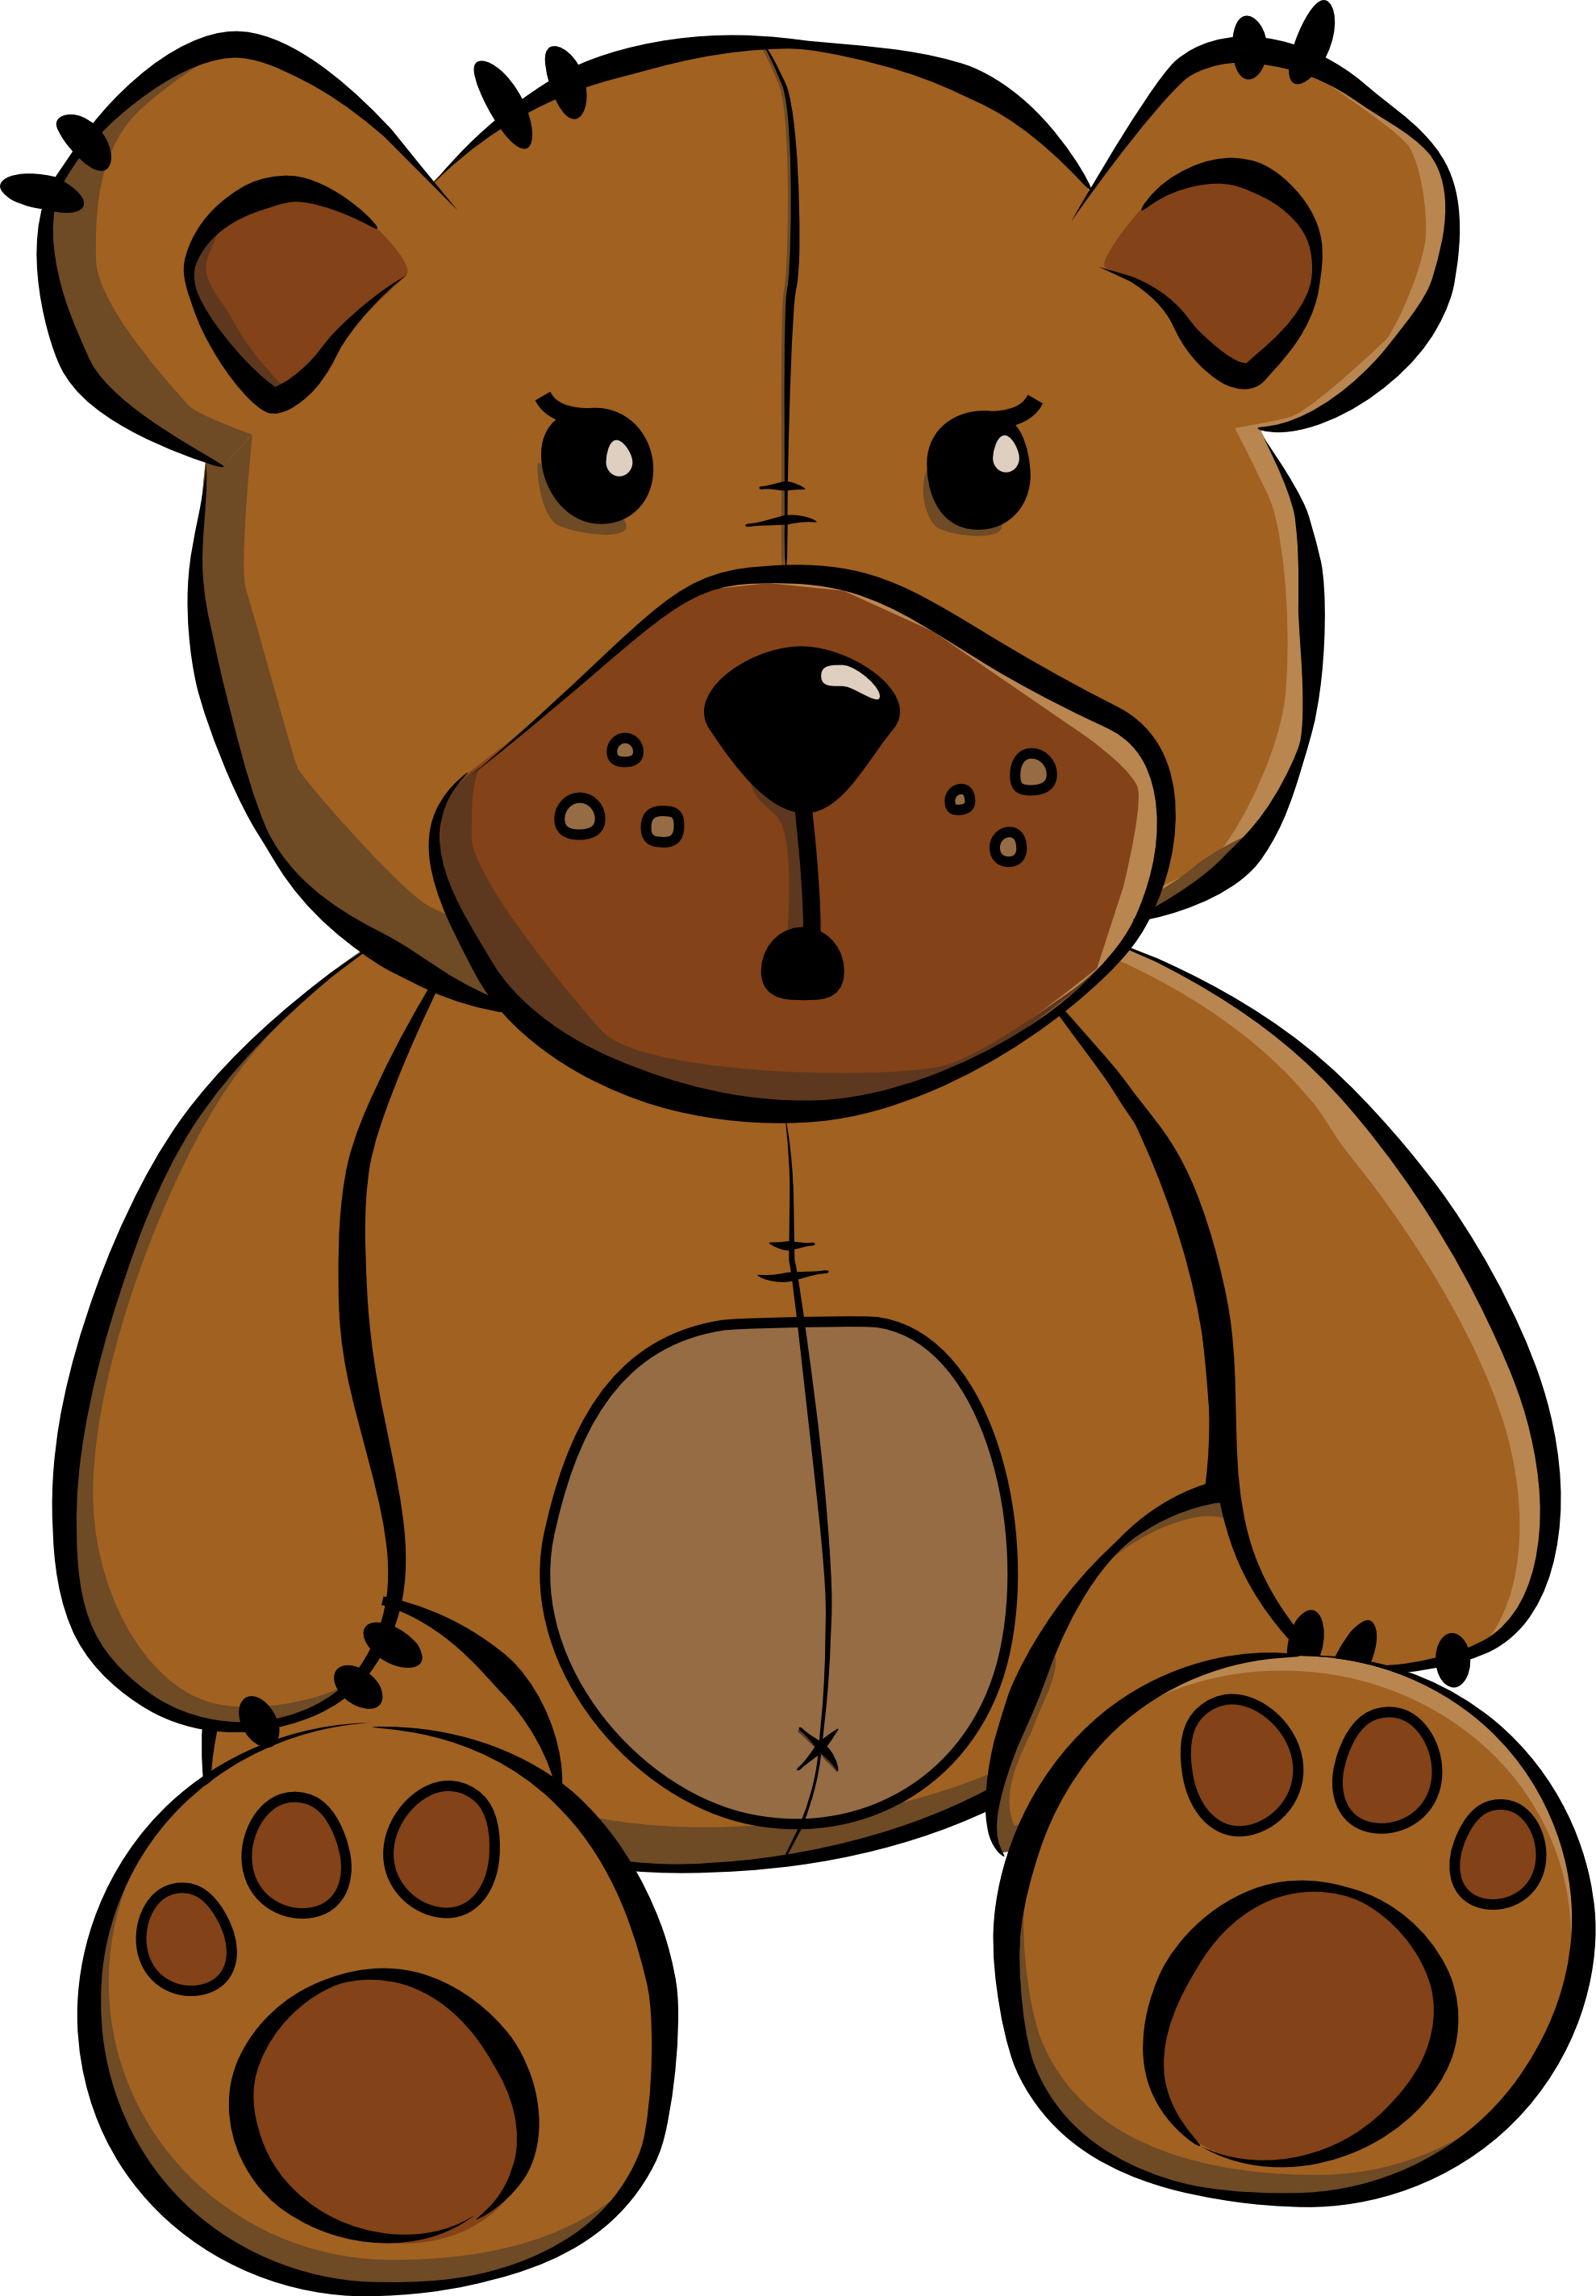 Teddy bear cartoon clipart